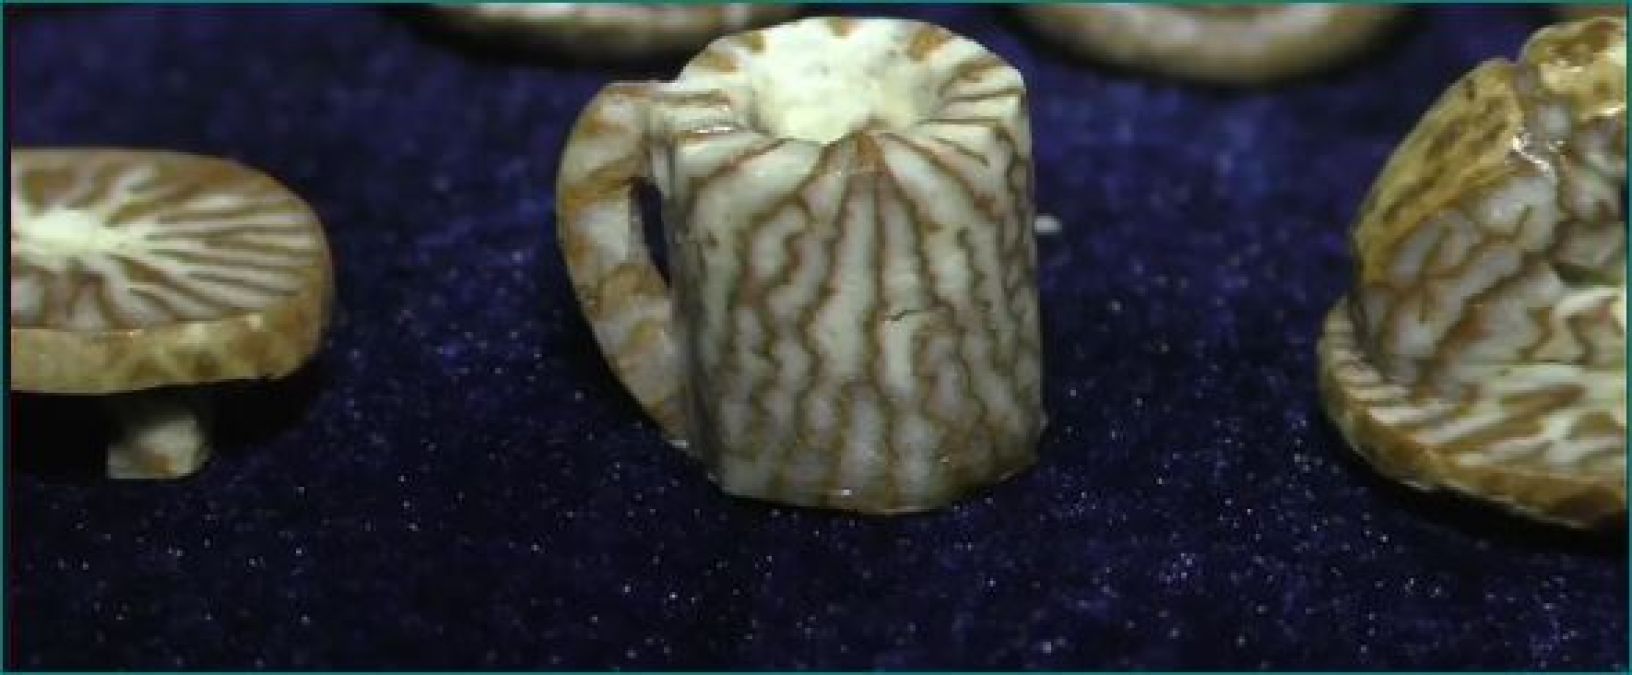 Miniature artist creates beautiful artworks on betel nuts